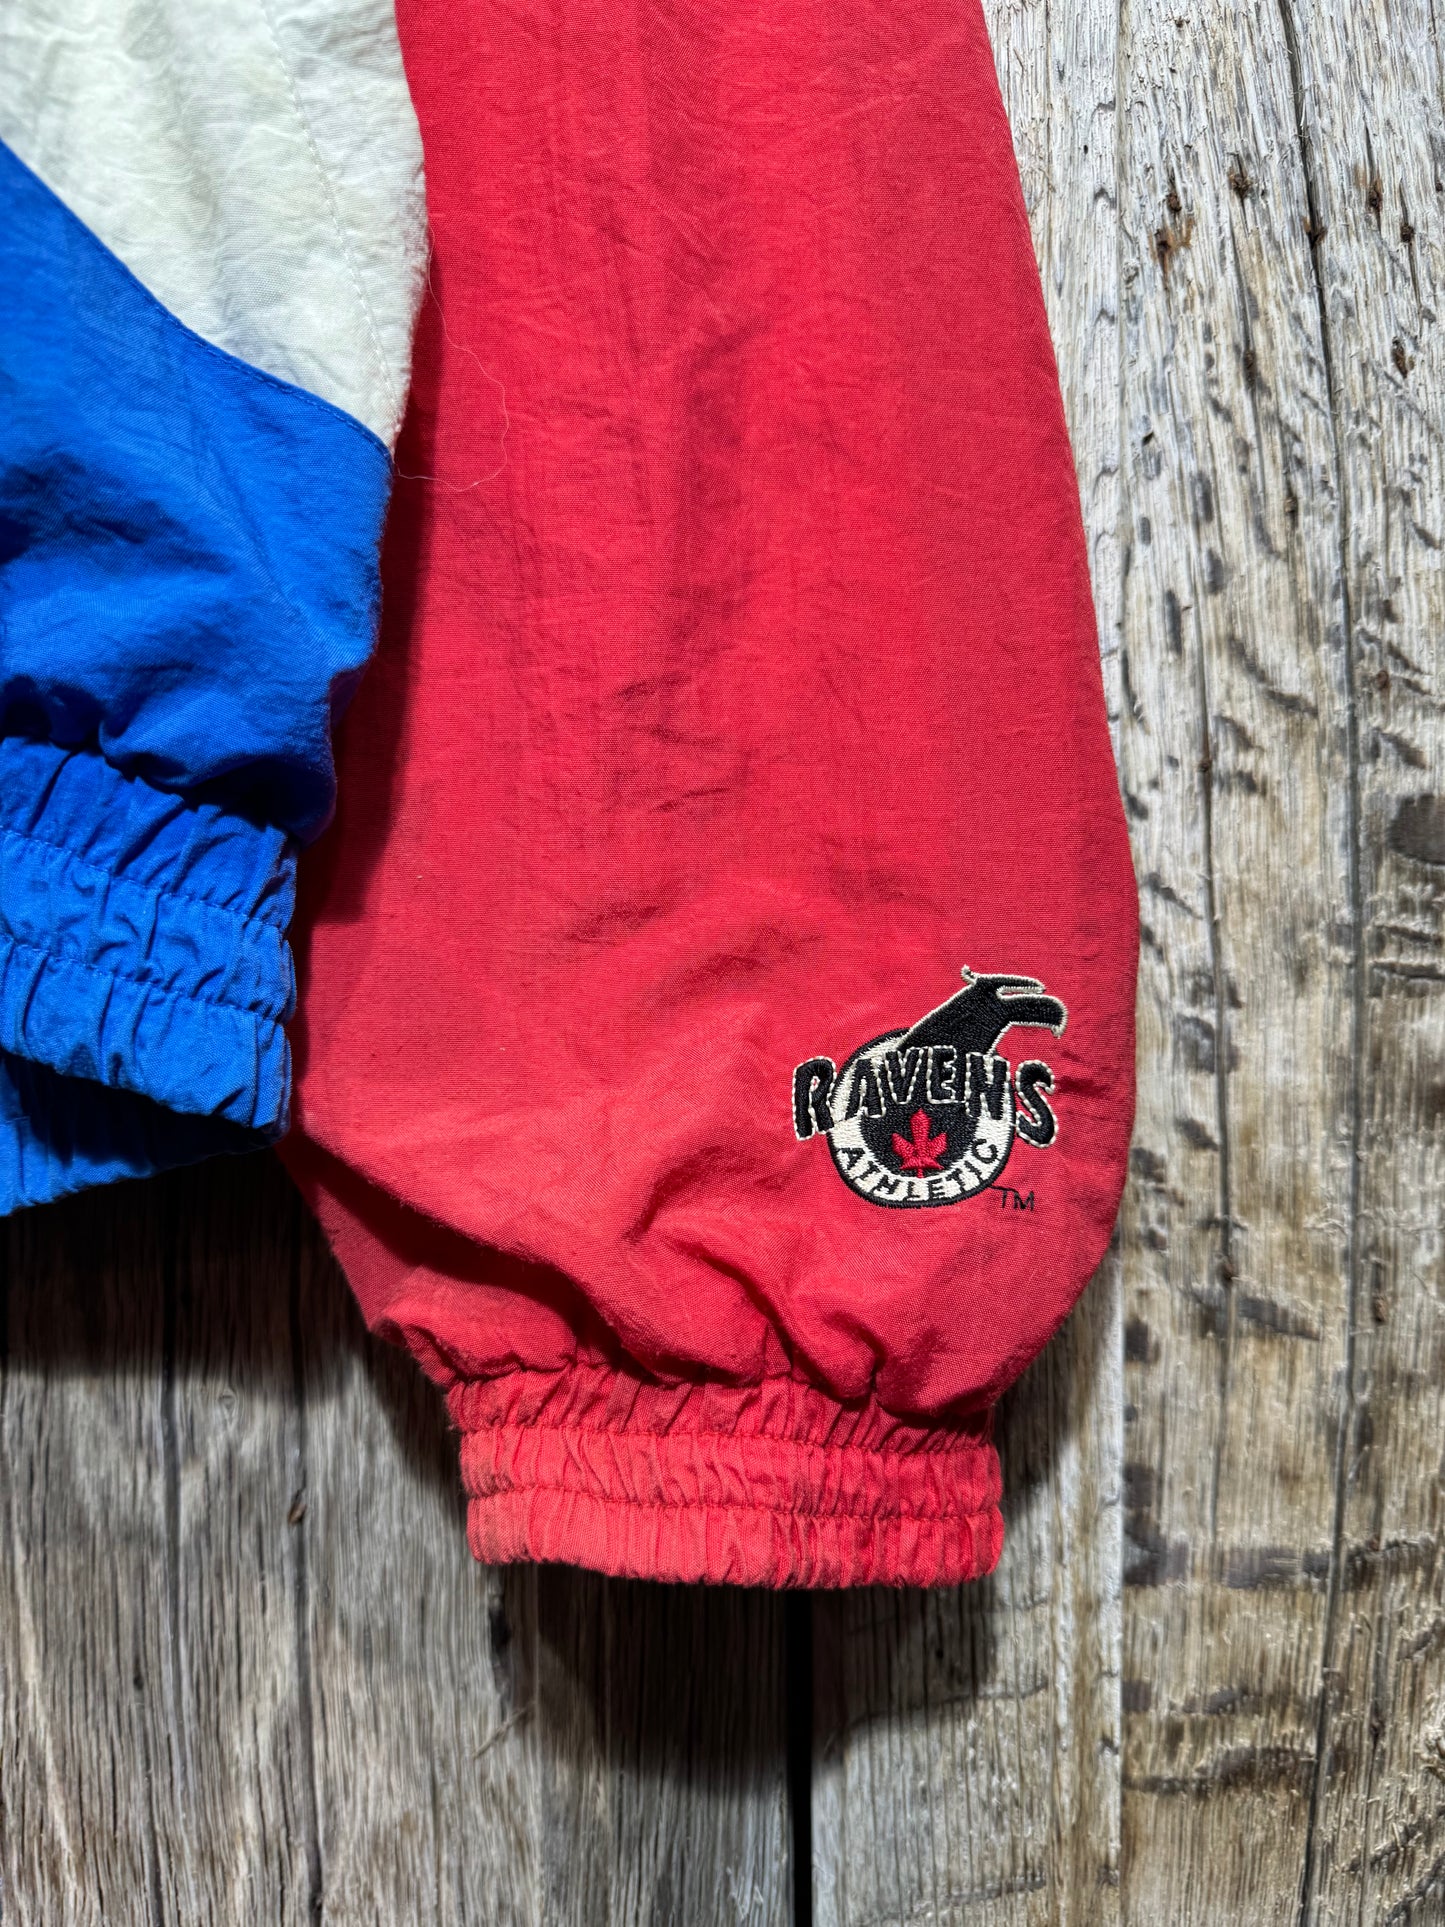 Vintage Montreal Canadiens Jacket